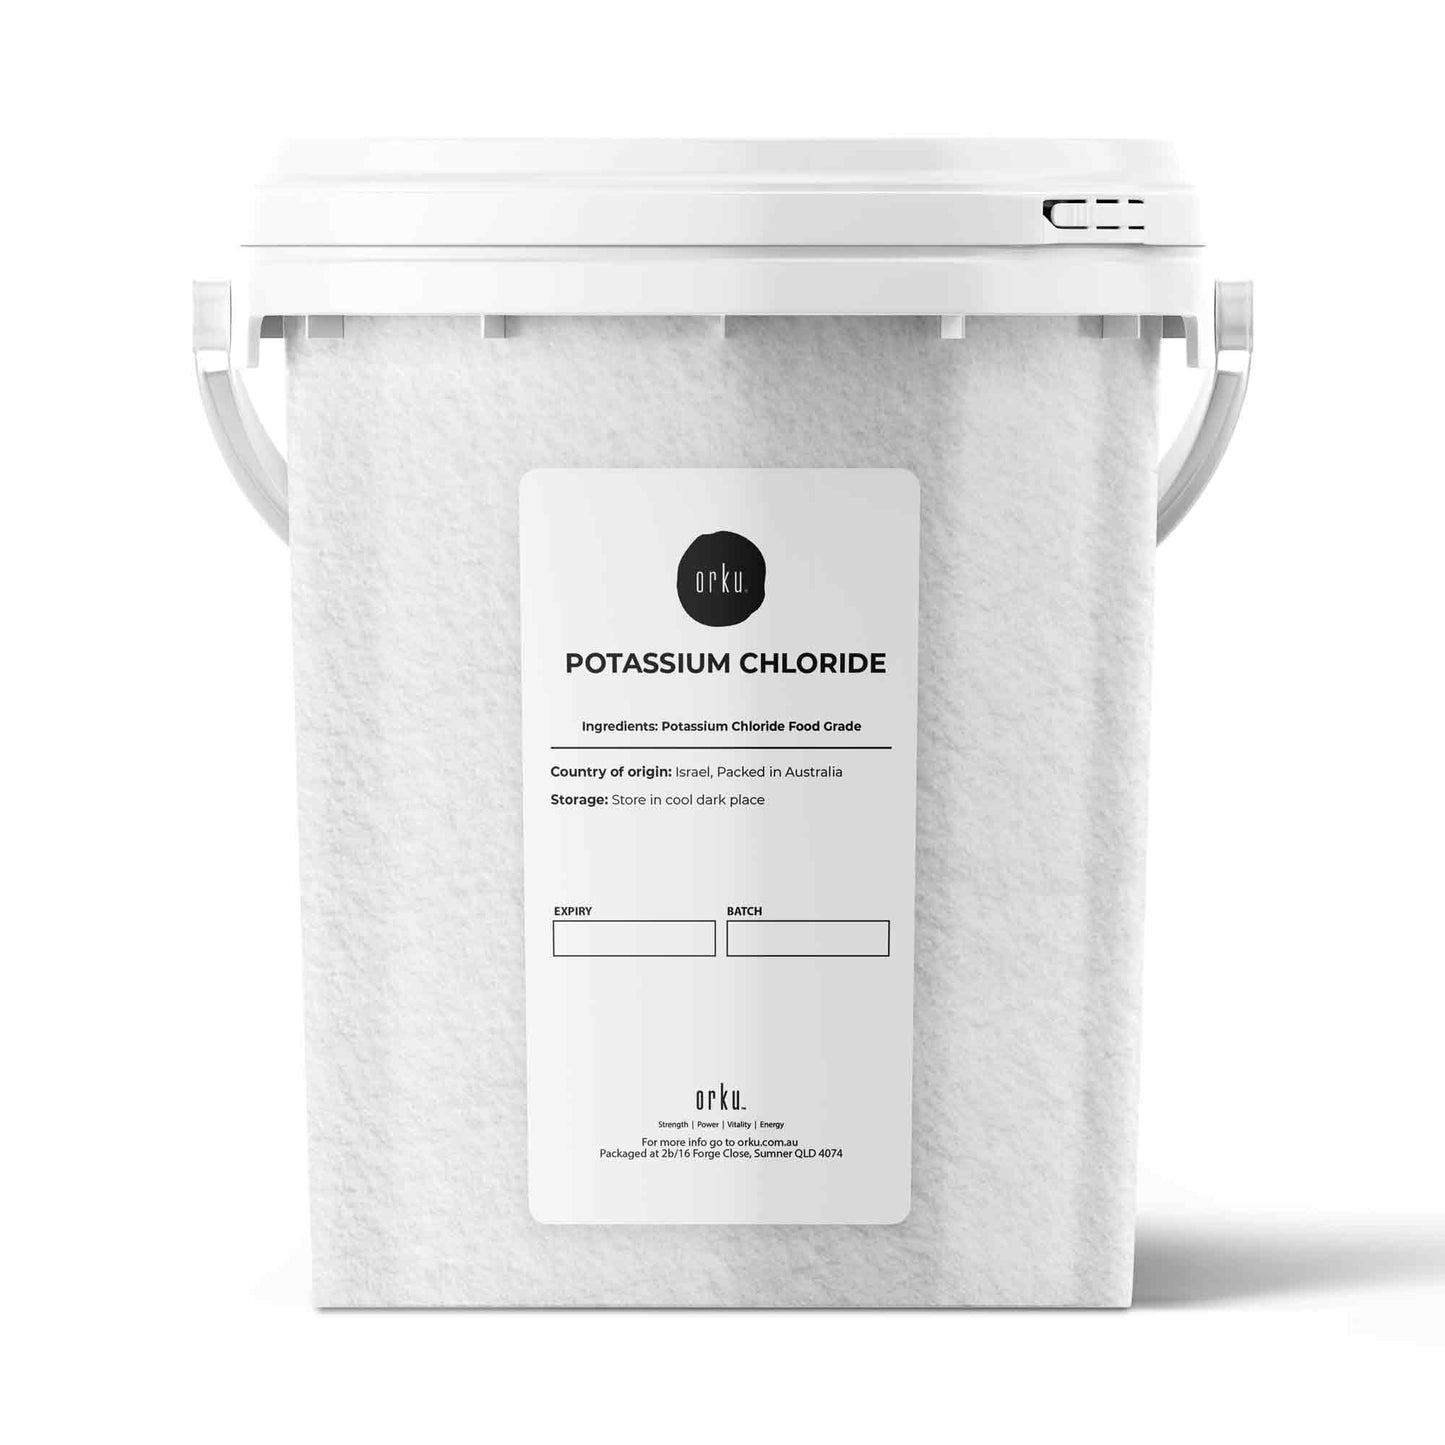 Potassium Chloride Powder Tub - Pure KCL E508 Food Grade Salt Supplement Bulk